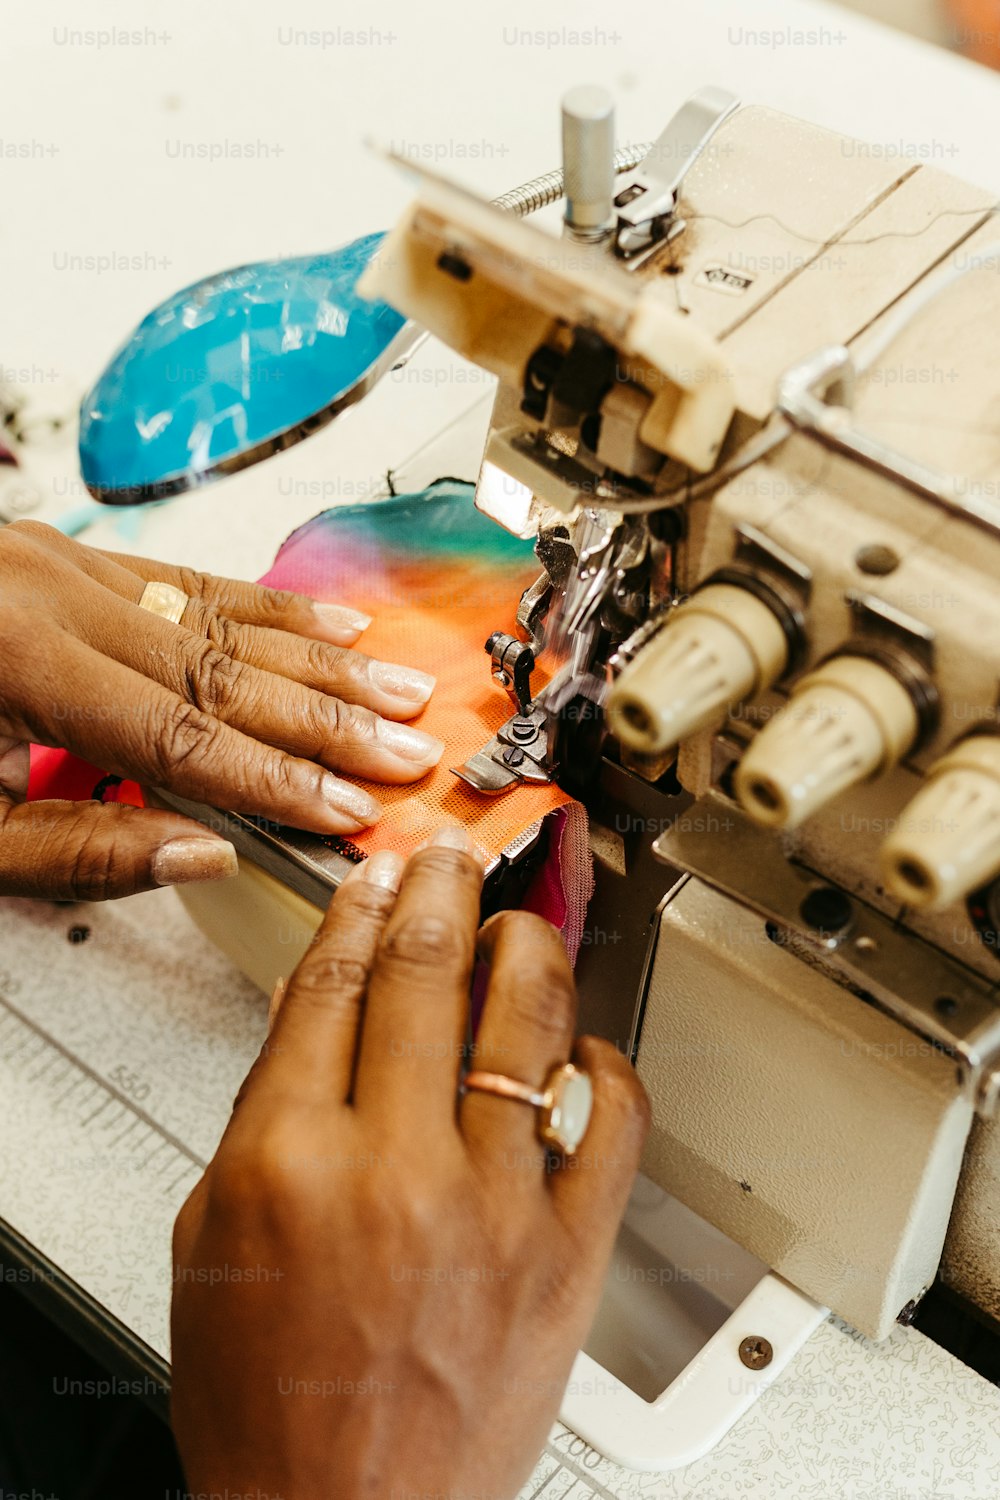 Una donna sta usando una macchina da cucire per cucire un pezzo di tessuto